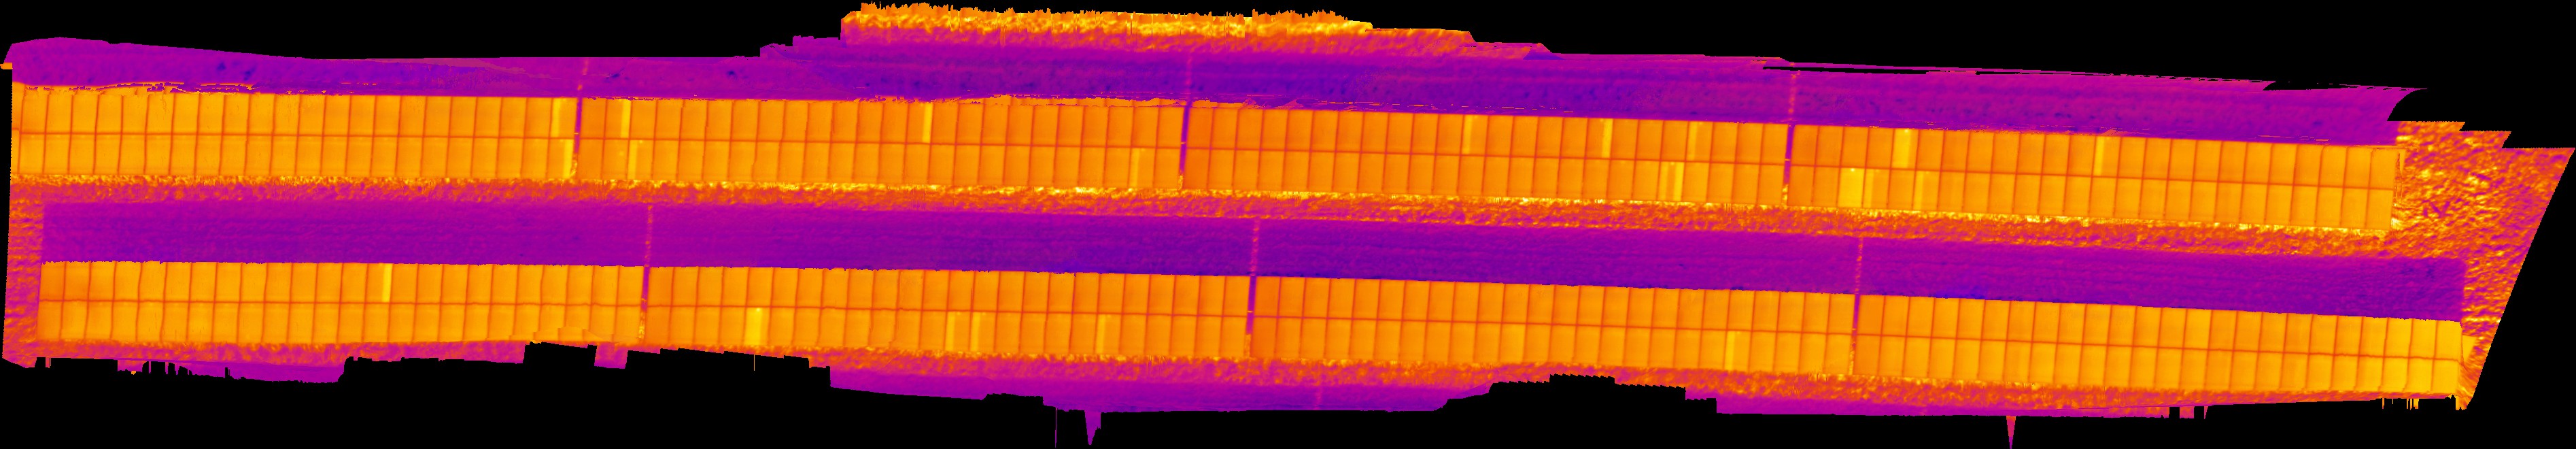 Orthobild mit defekten PV Modulen aus IR Bildern